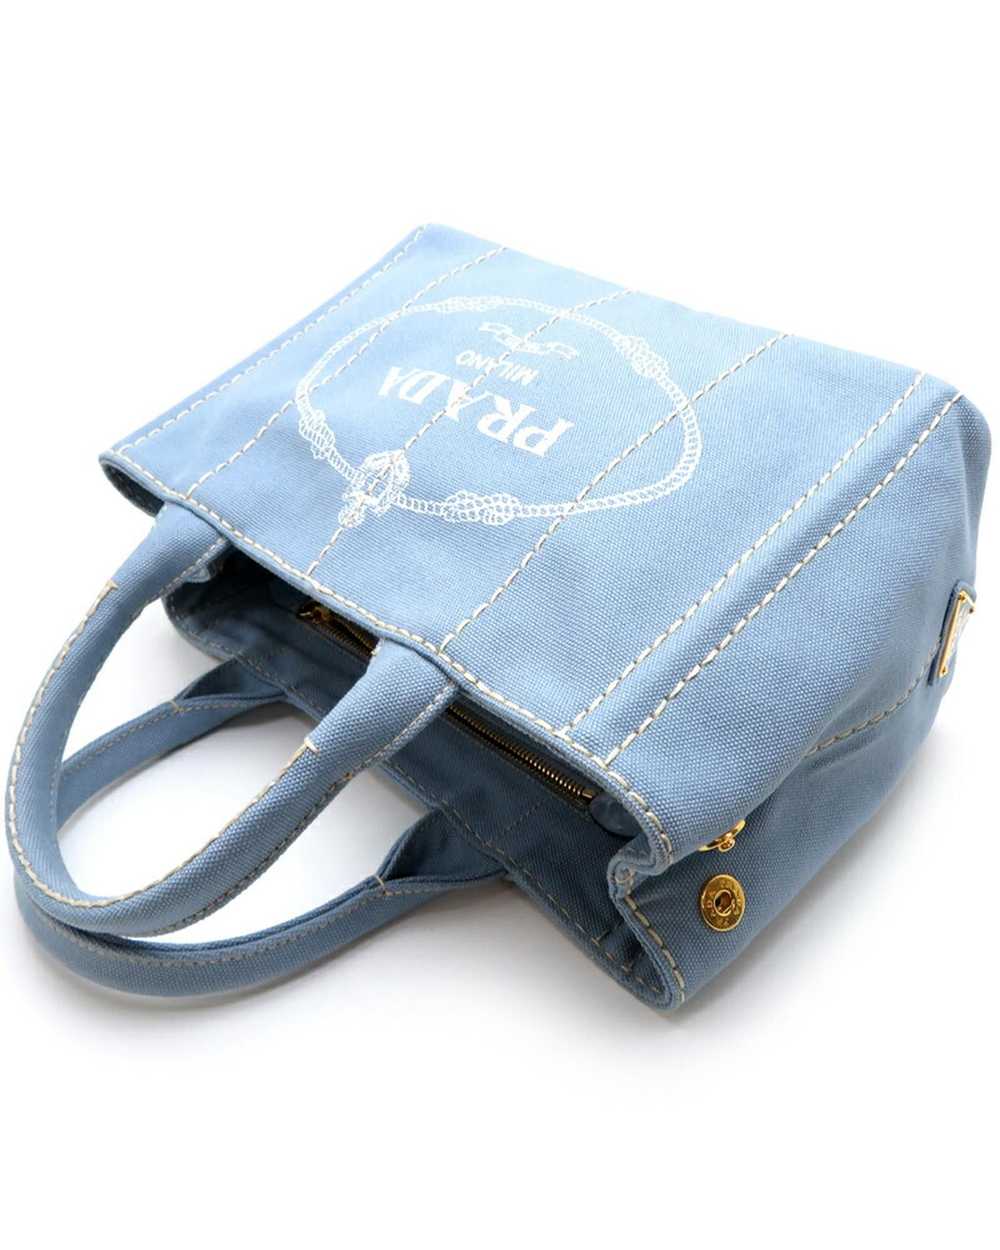 Prada Blue Canapa Logo Handbag in Excellent Condi… - image 4